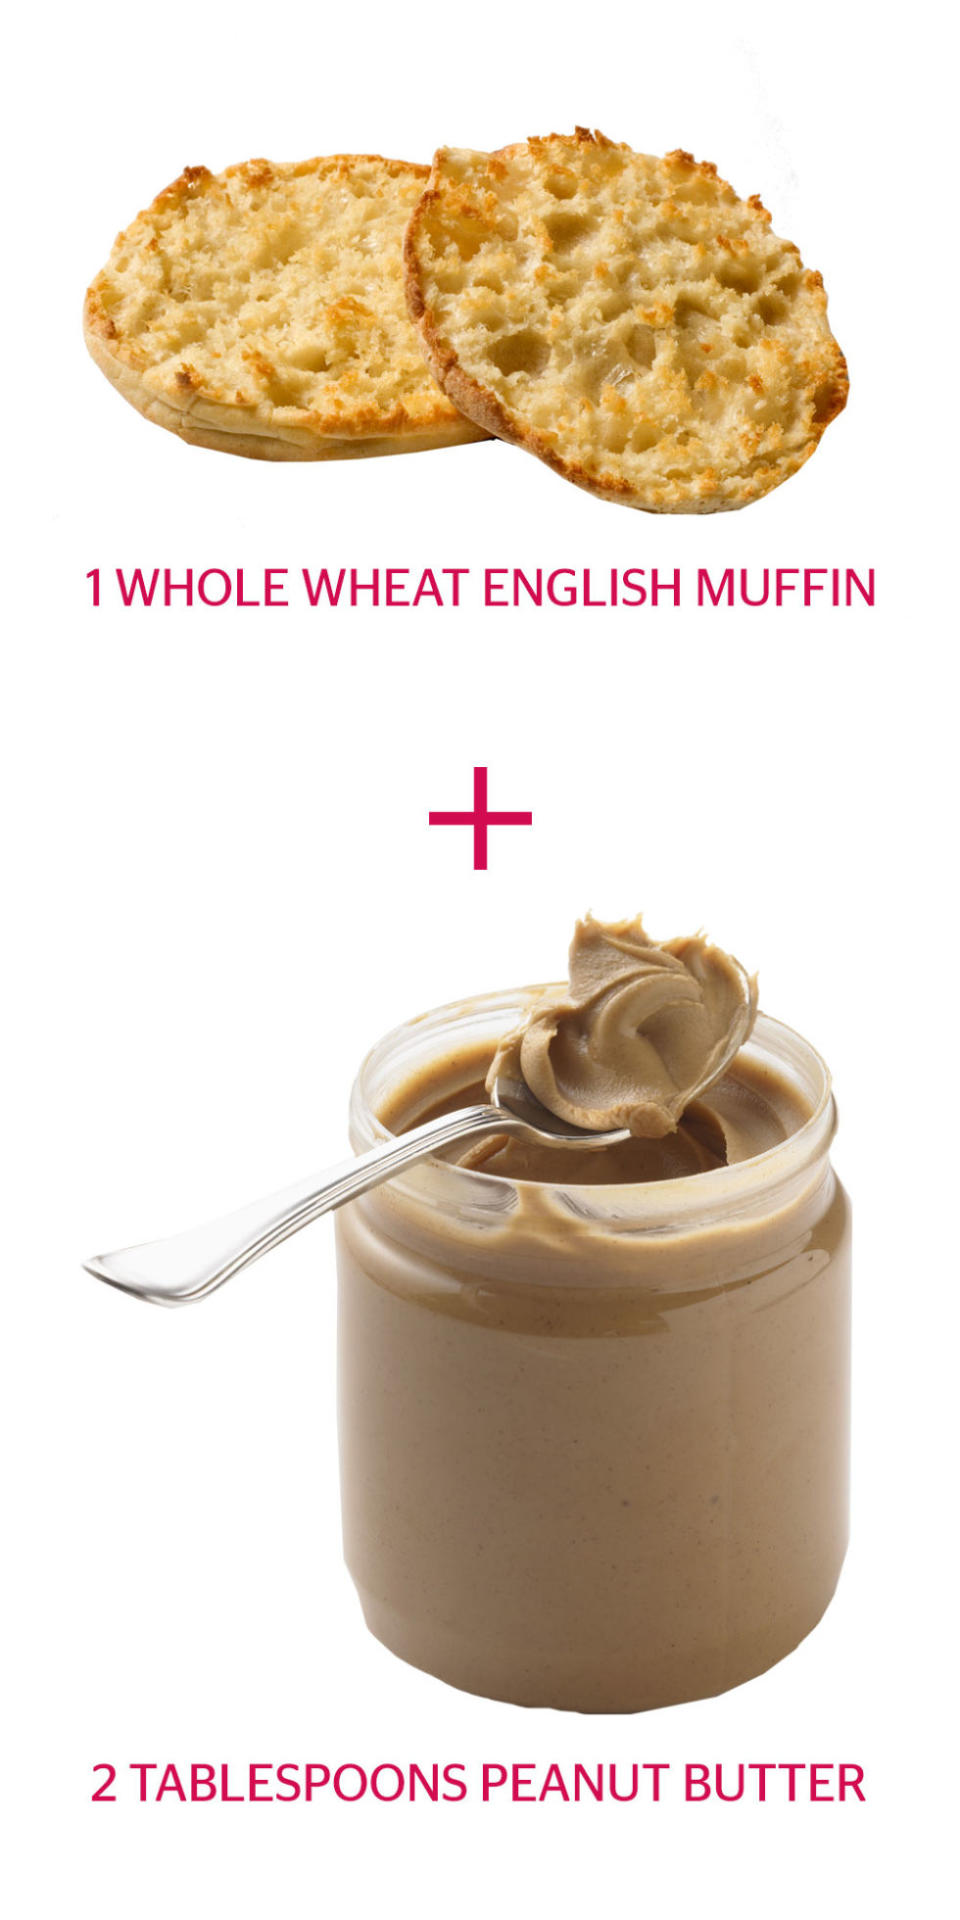 Whole-Wheat English Muffin + Peanut Butter